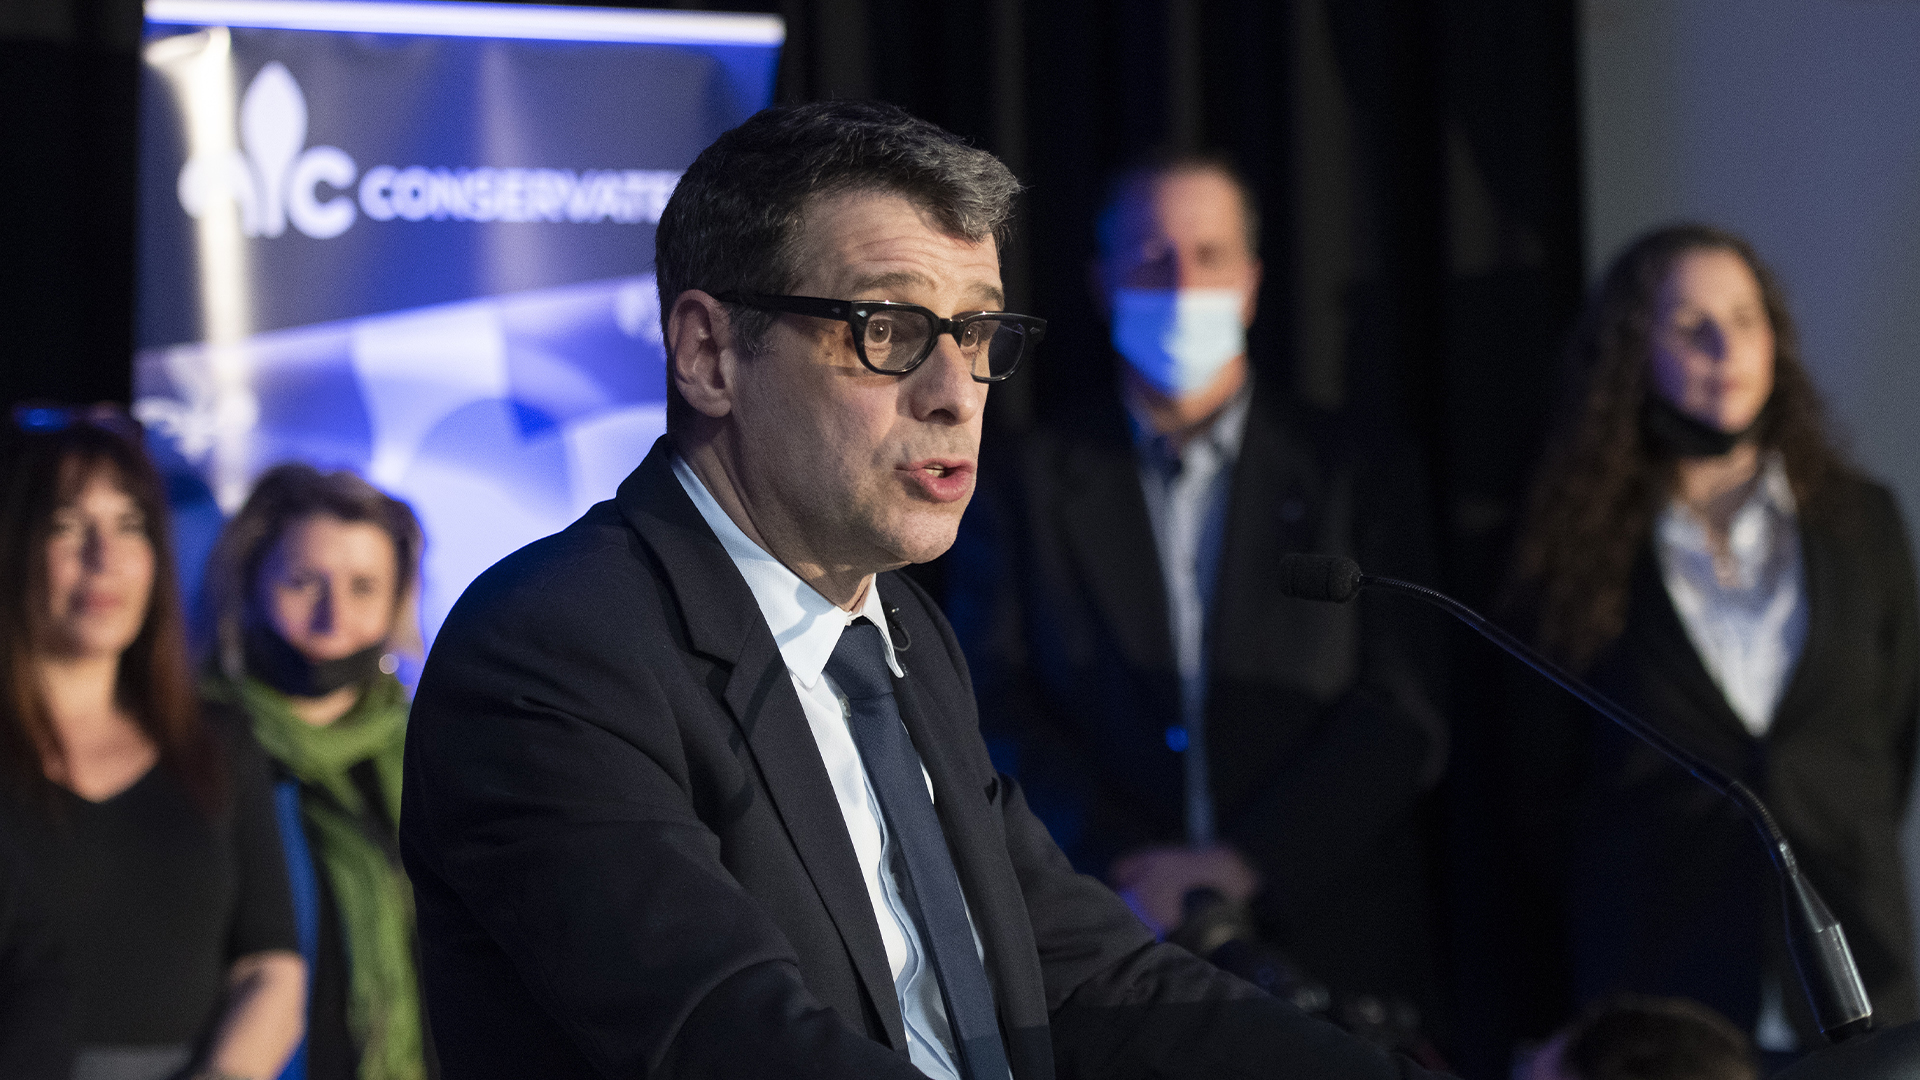 Le chef du Parti conservateur du Québec (PCQ), Éric Duhaime, a suggéré mercredi de suspendre temporairement la taxe de vente du Québec sur l’essence afin de réduire l’écart du prix à la pompe avec l’Ontario.